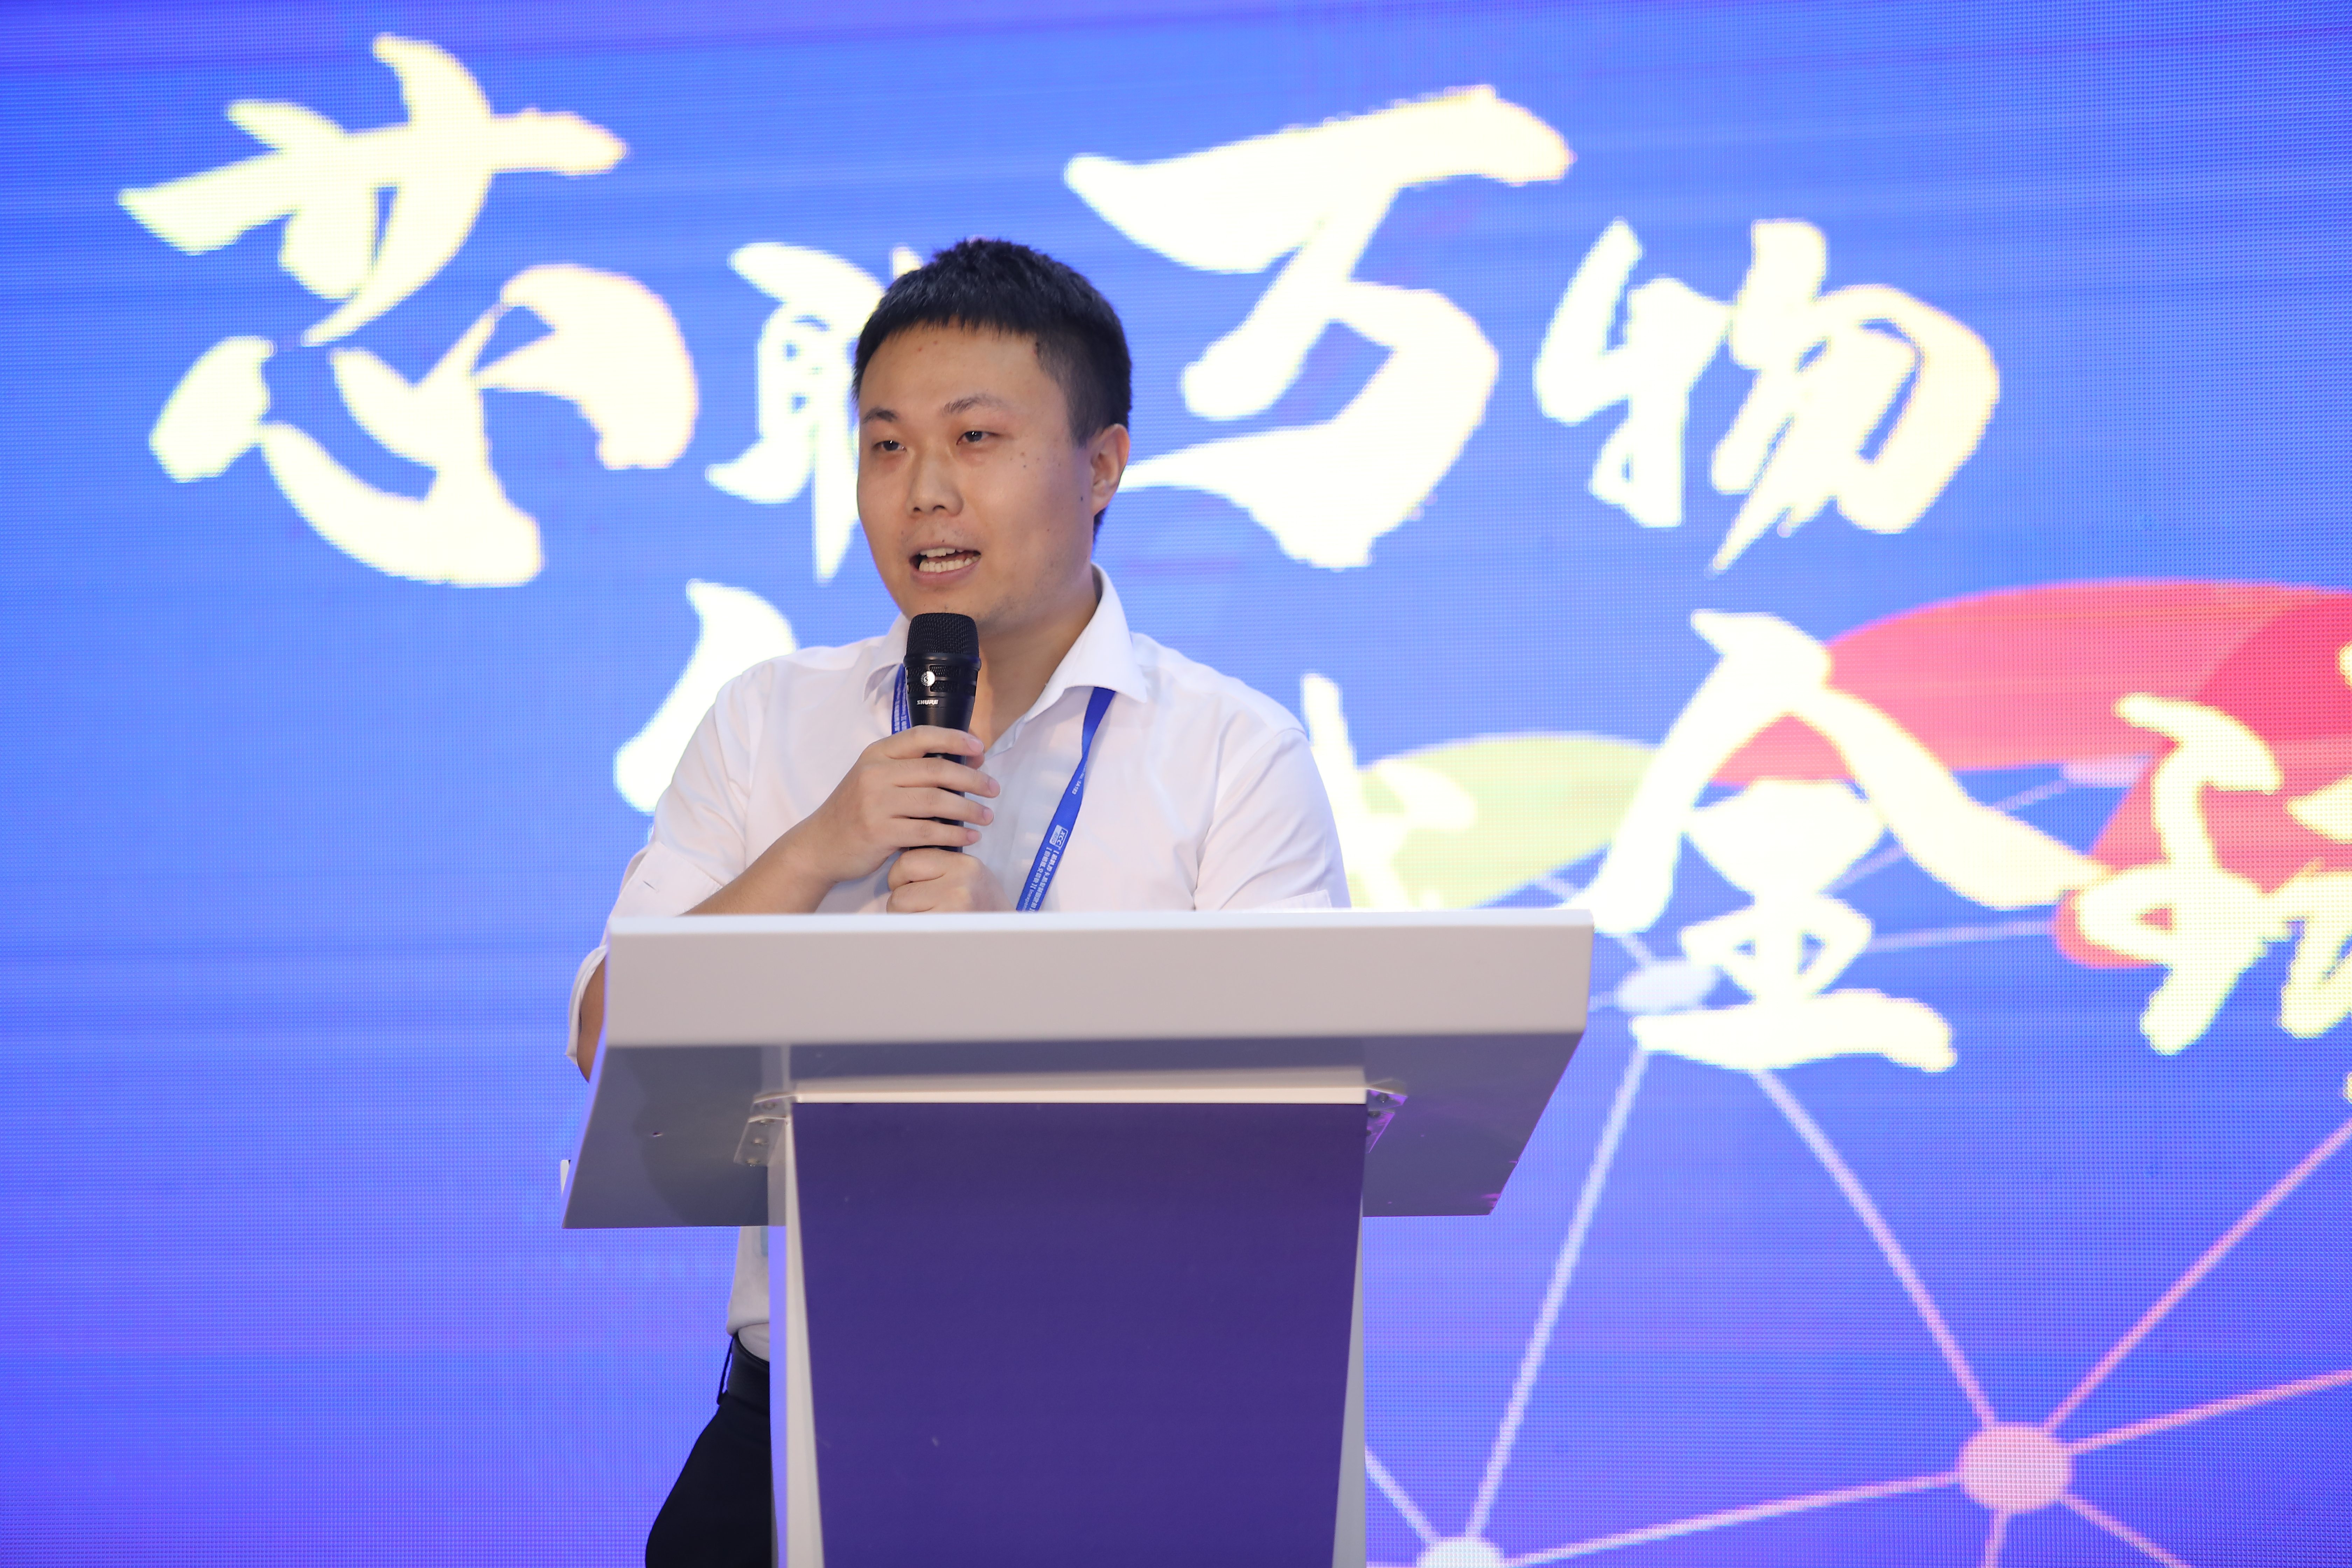 【论坛】IOTE 2021深圳国际高精度定位技术与应用创新高峰论坛 